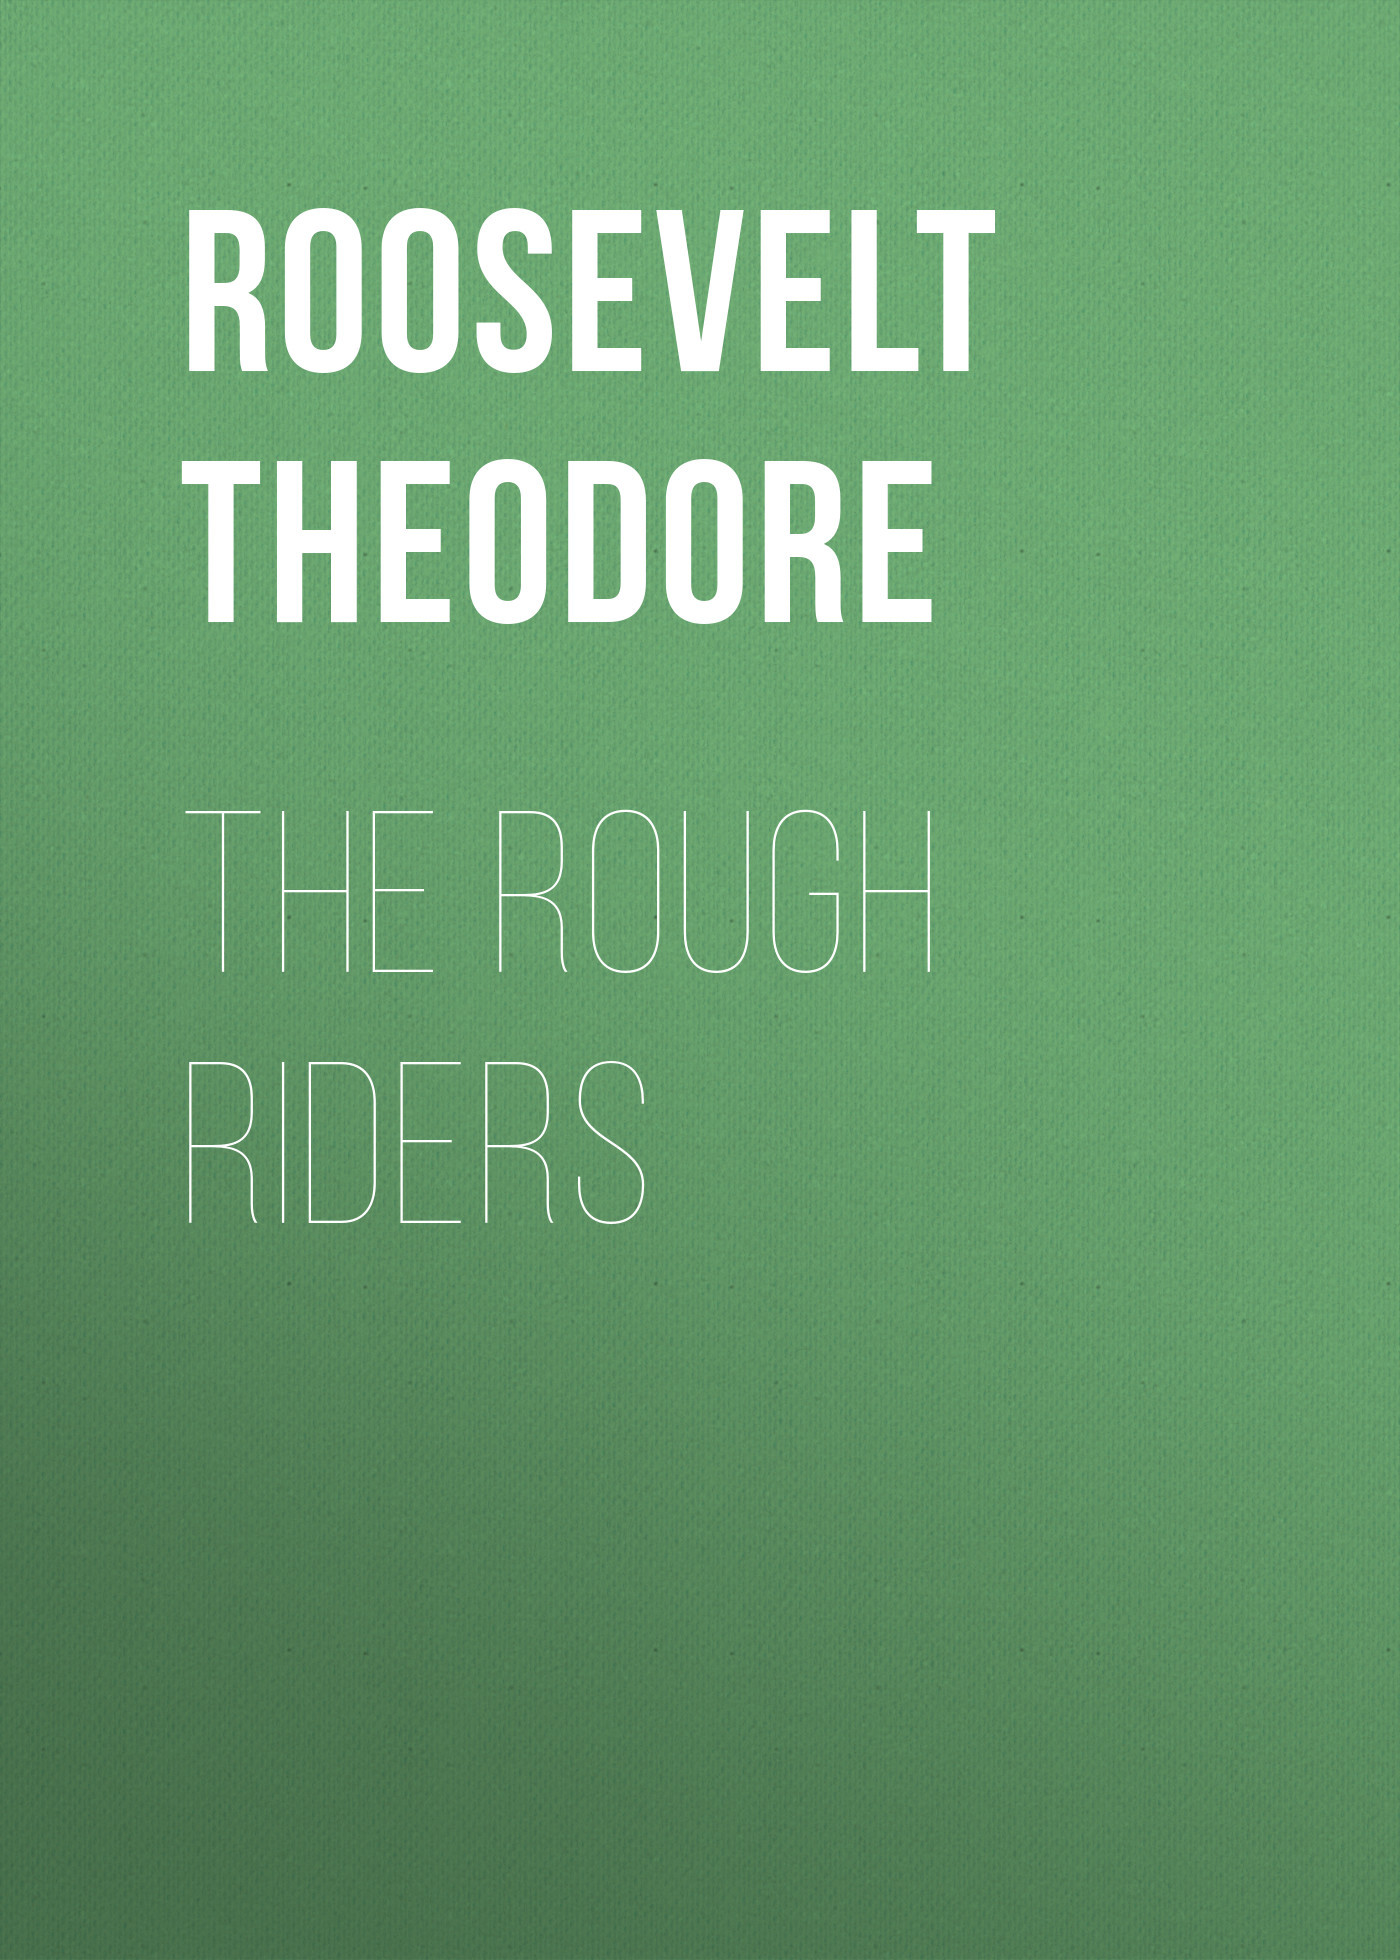 Книга The Rough Riders из серии , созданная Theodore Roosevelt, может относится к жанру Зарубежная классика, История, Зарубежная образовательная литература, Зарубежная старинная литература. Стоимость электронной книги The Rough Riders с идентификатором 36095349 составляет 0 руб.